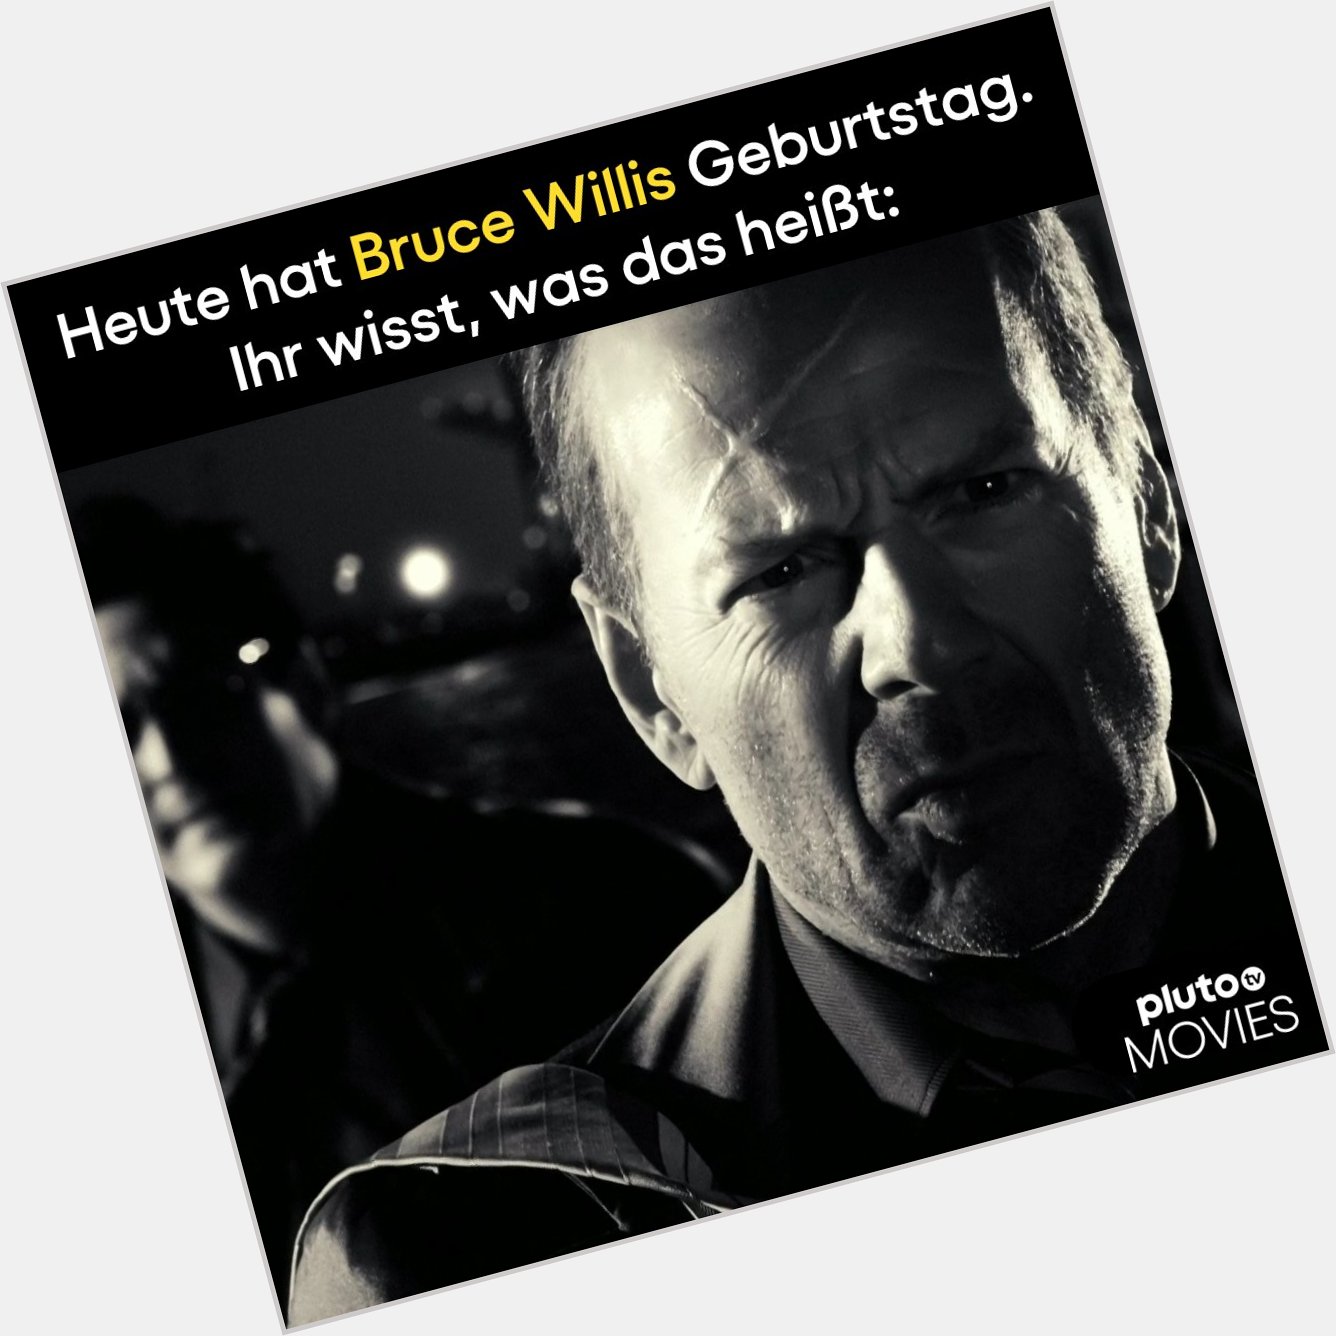 Happy Birthday Bruce Willis! Ab 22 Uhr auf Pluto TV Movies (CH 50): Sin City 